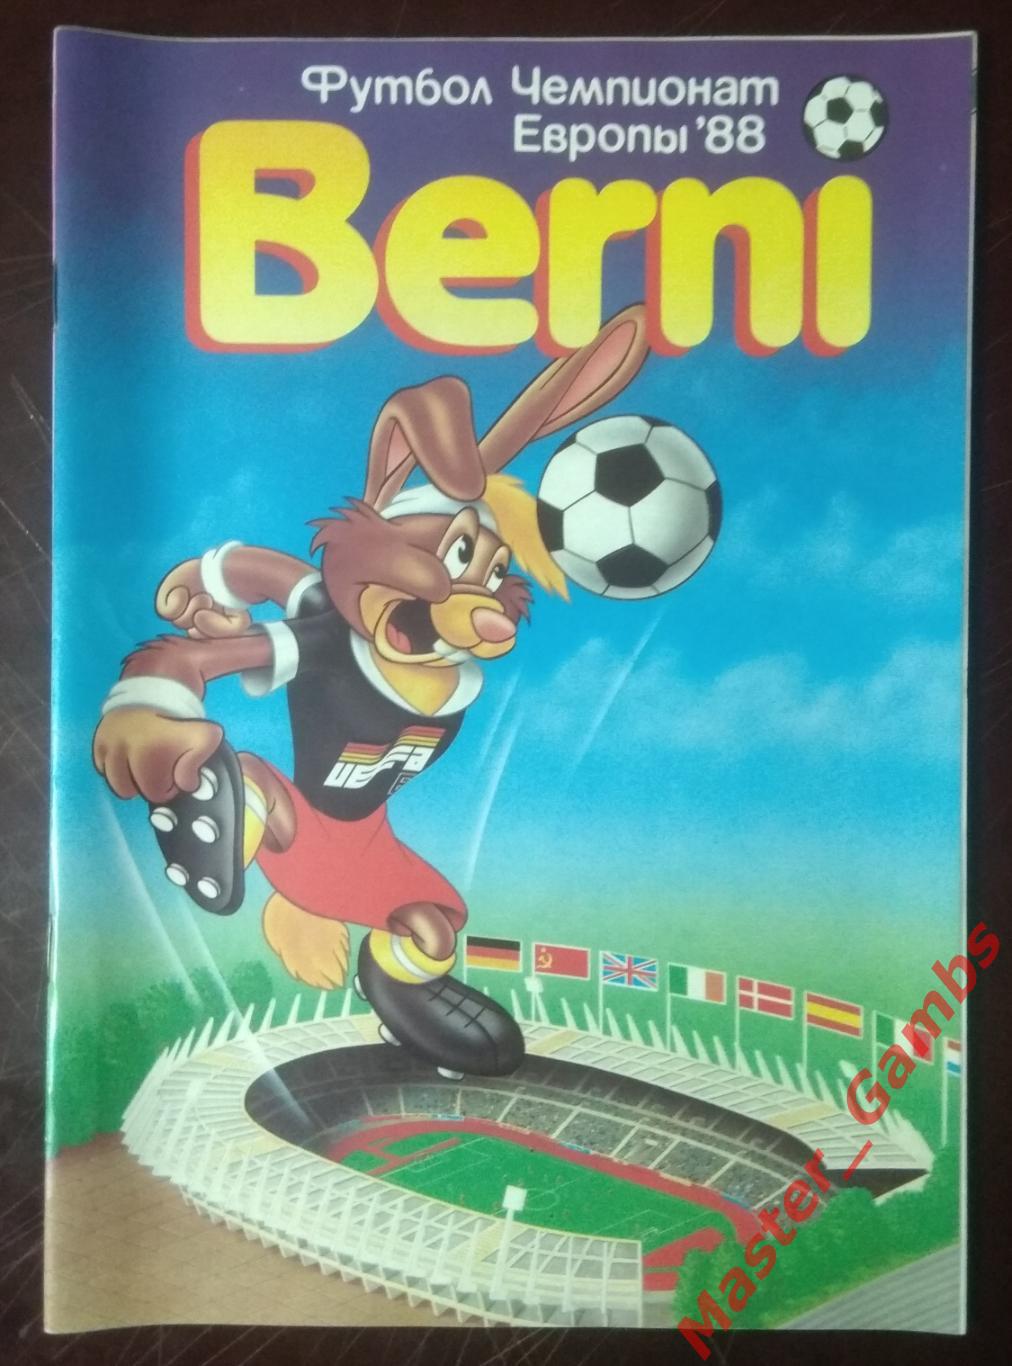 Горбунов - журнал Берни #1 Чемпионат Европы 1988 - москва 1988